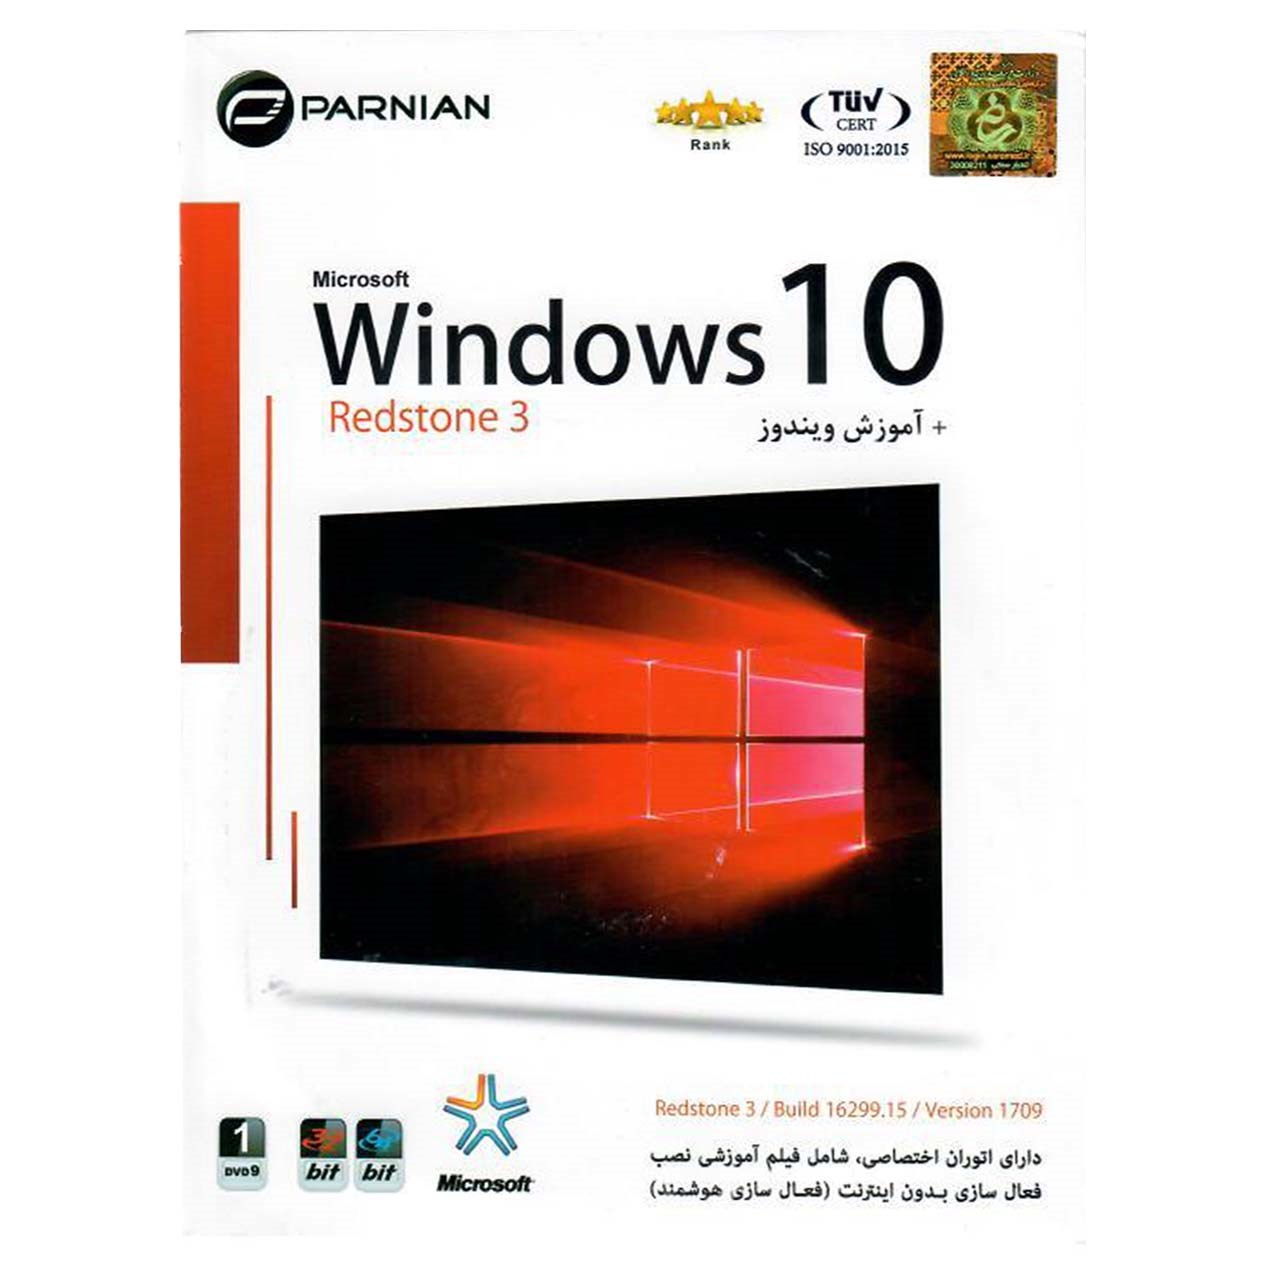 سیستم عامل ویندوز 10 رداستون 3 به همراه نرم افزارهای کاربردی نشر پرنیان